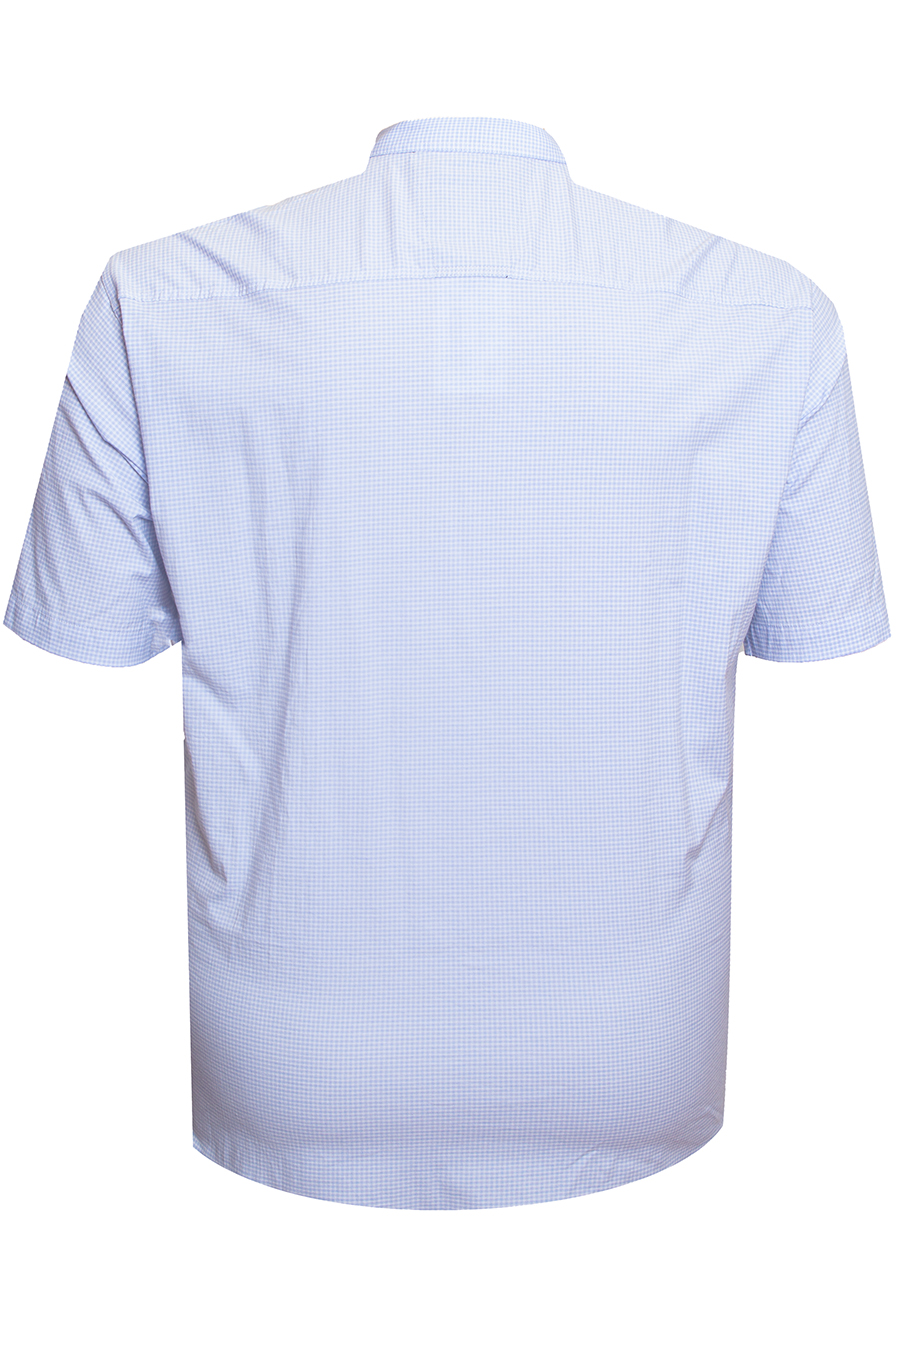 Рубашка Birindelli голубая 06-503 большого размера